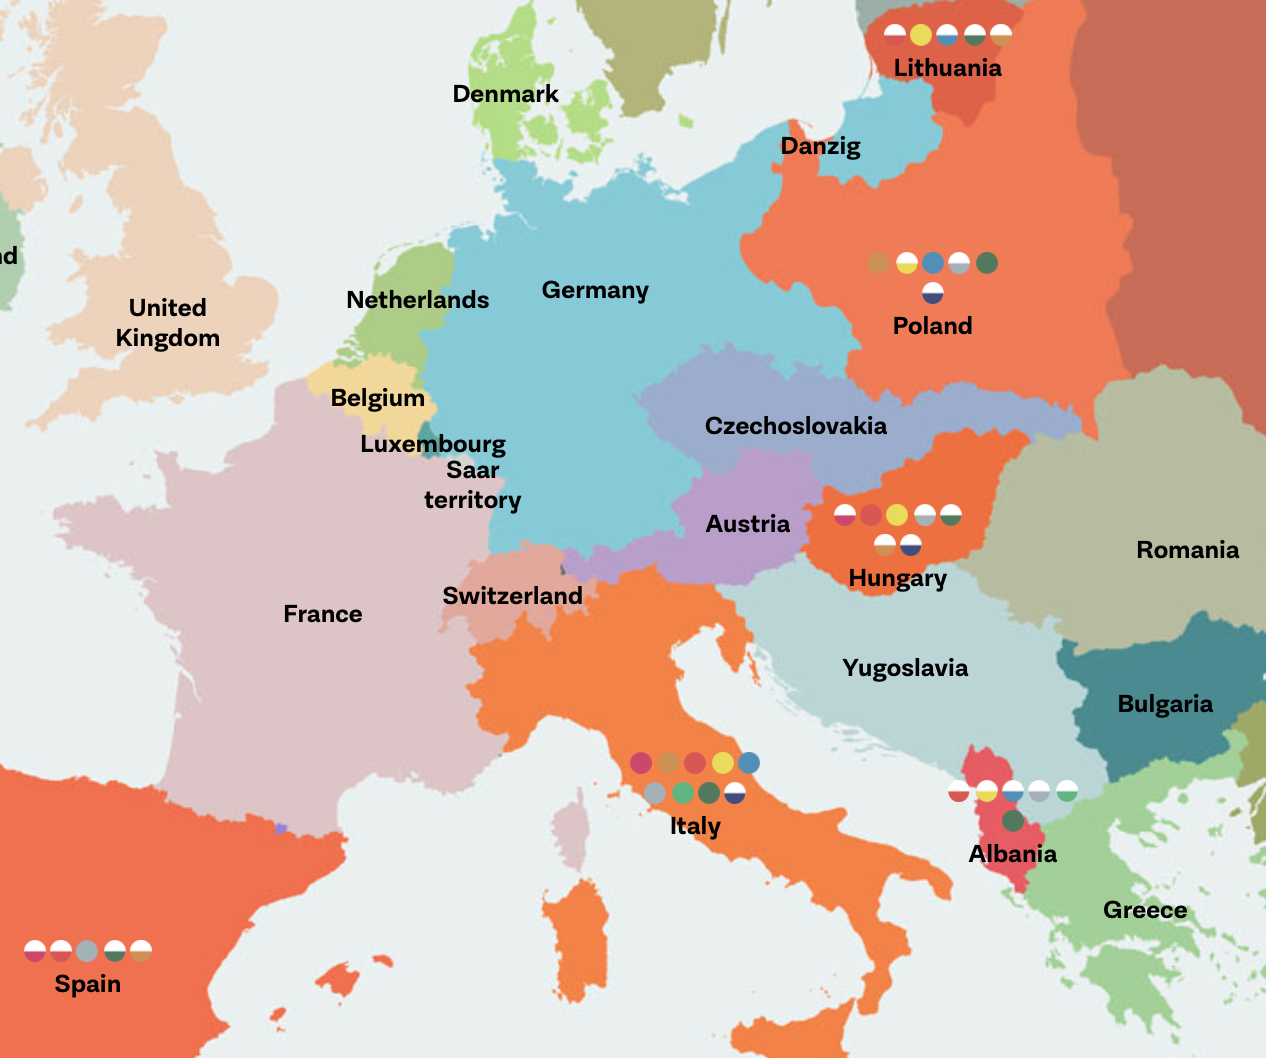 Europe of Dictatorships/Europa der Diktaturen